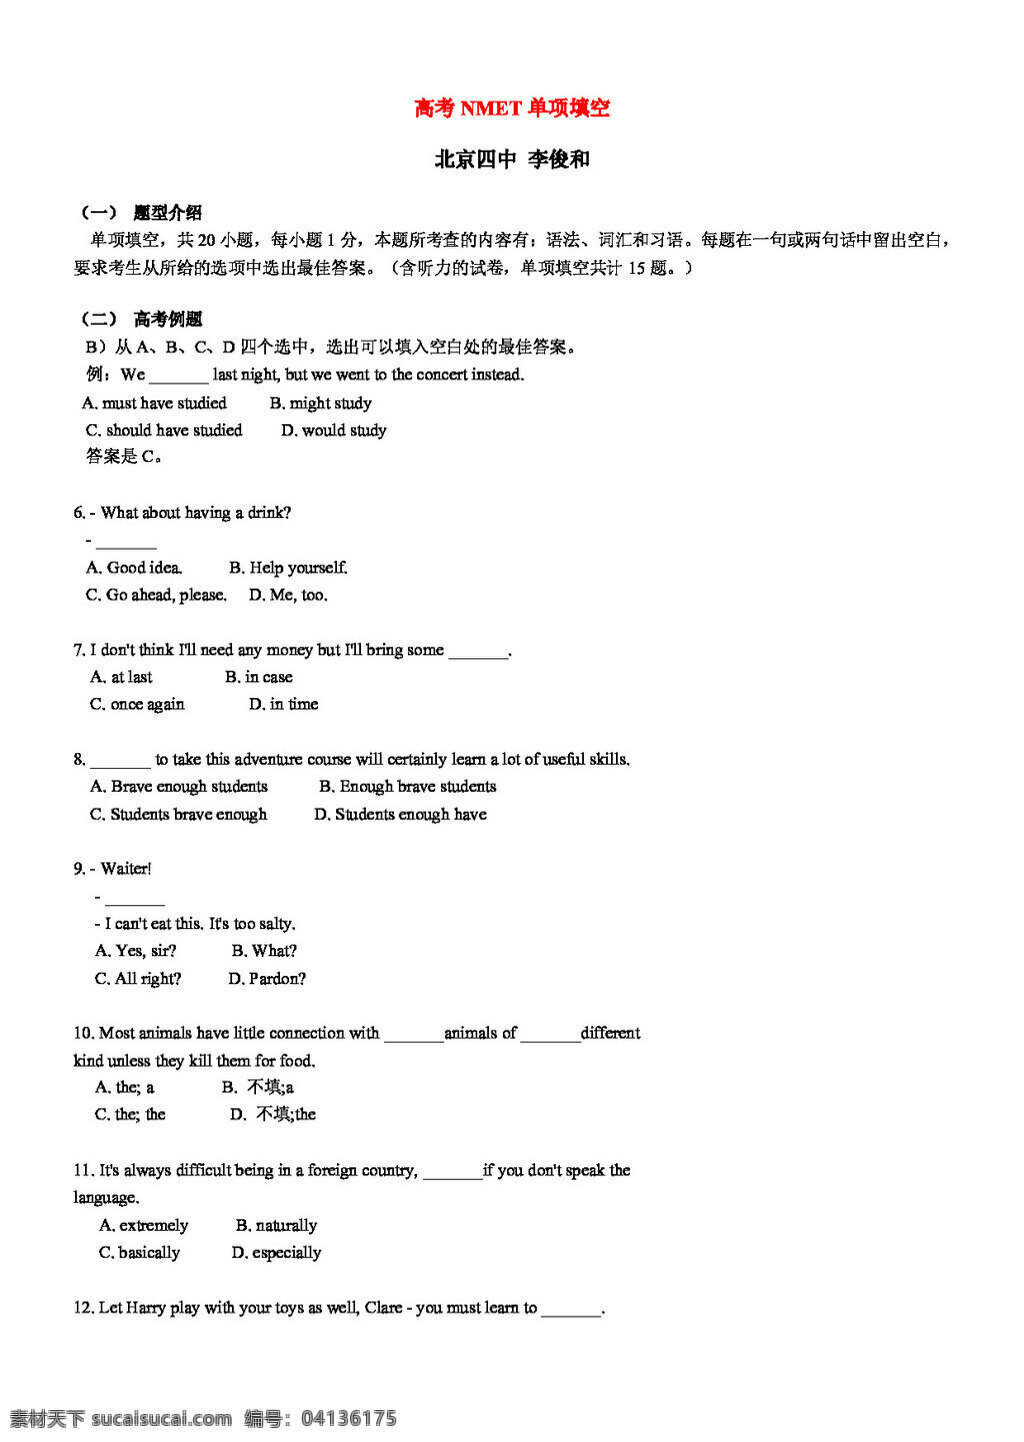 英语 会考 专区 北京 高考 复习资料 试卷